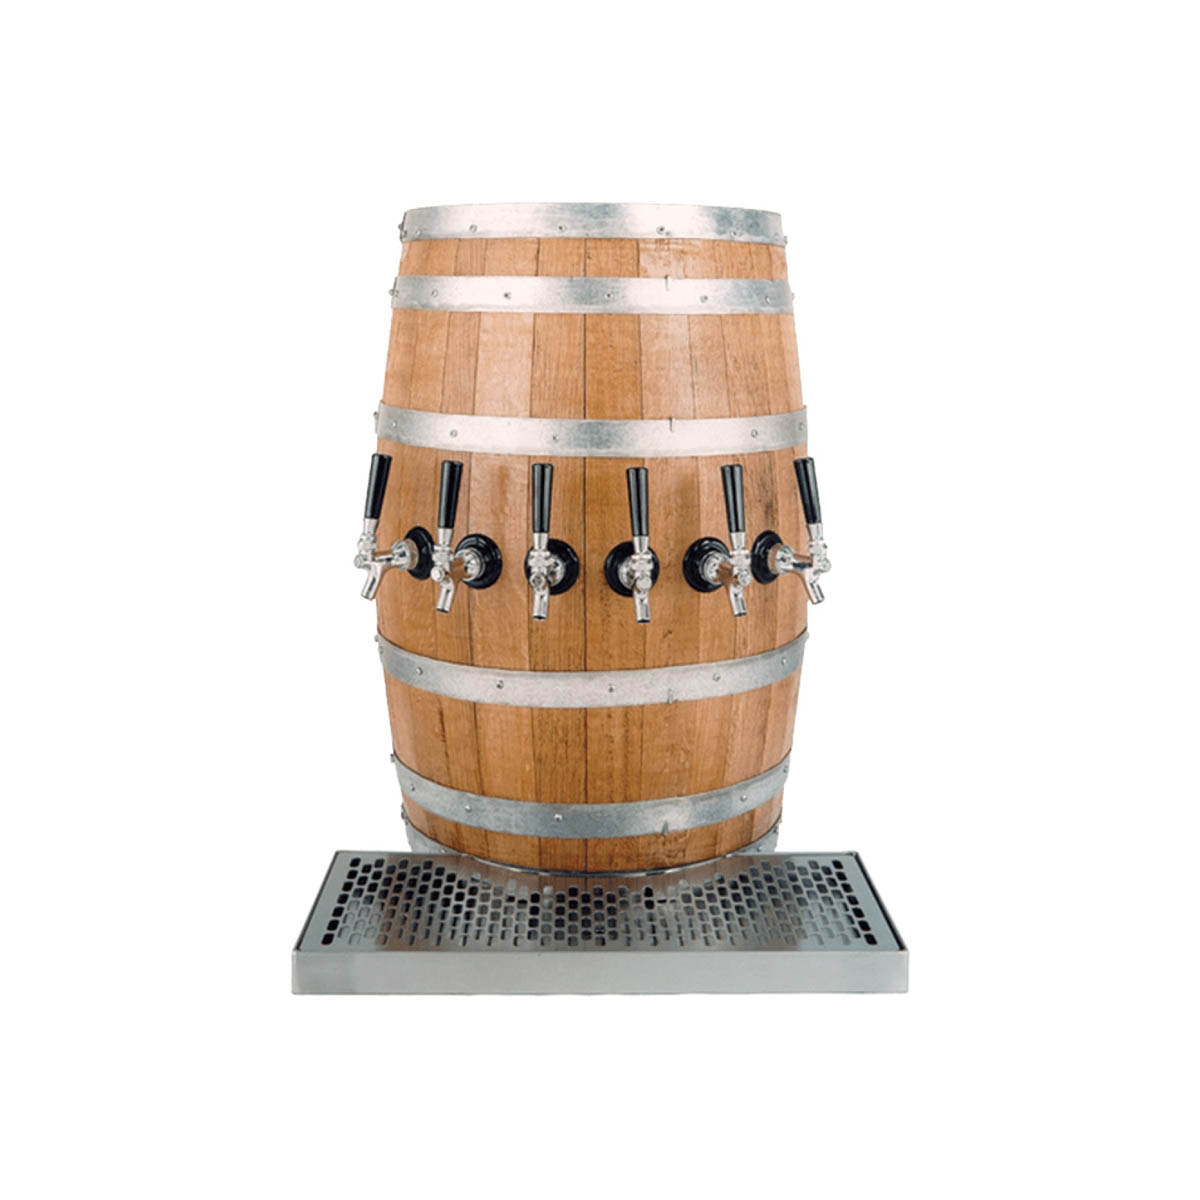 Glastender WB-4-BR Draft Beer / Wine Dispensing Tower